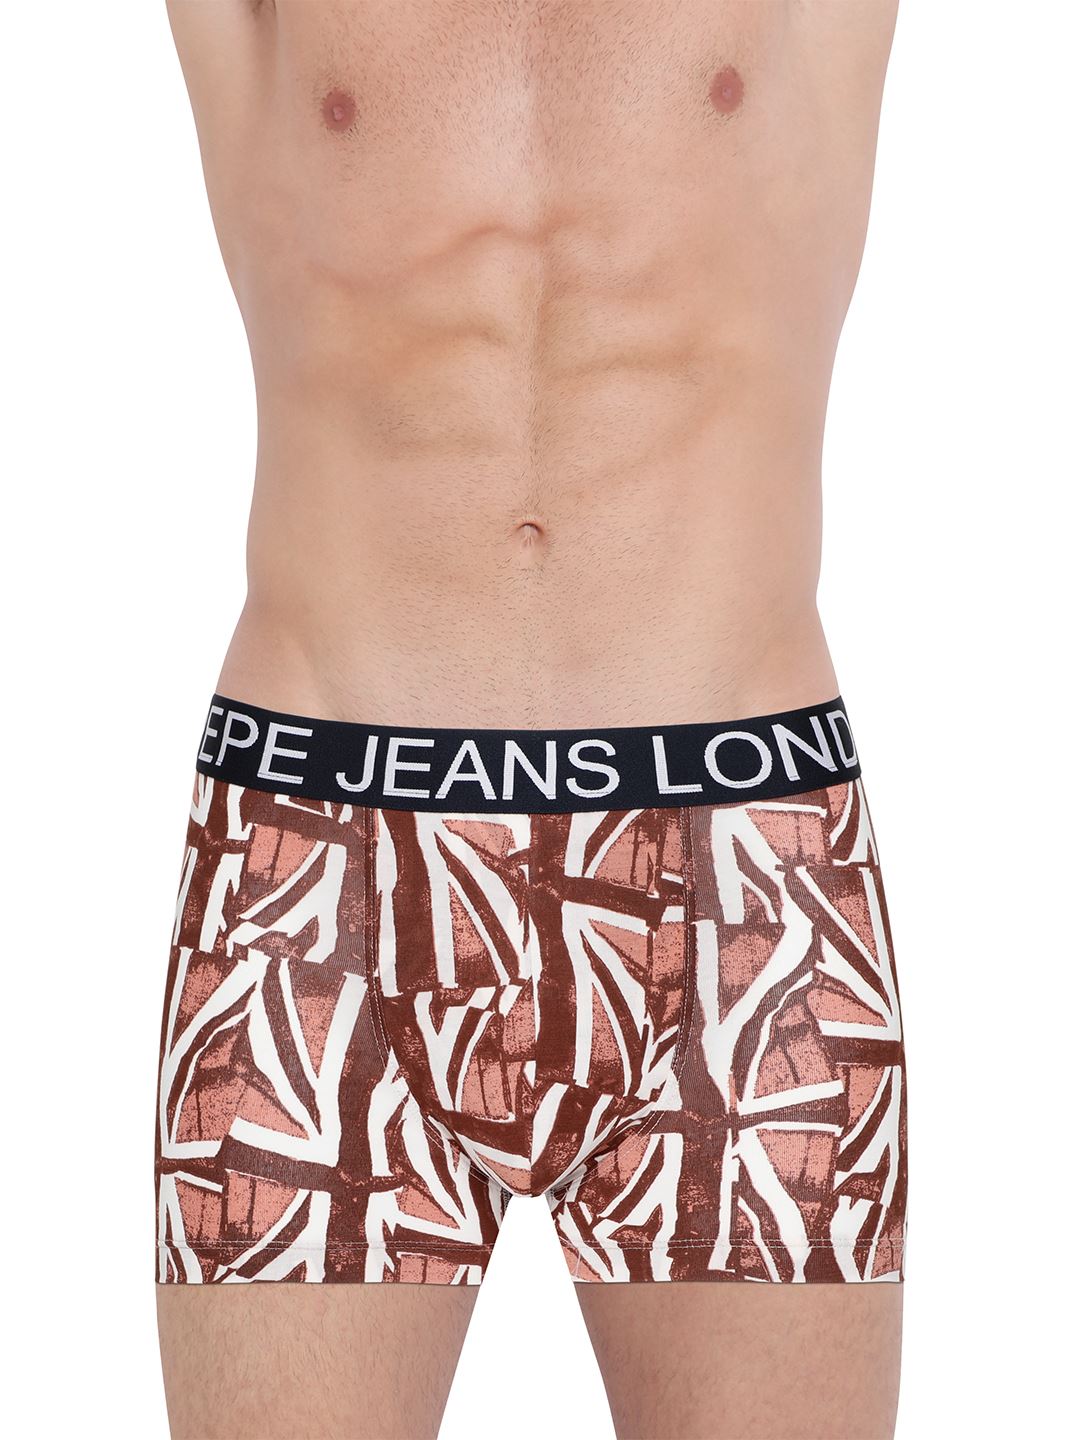 Pepe Jeans London Men Geometric Print Brown Trunk Pack Of 1